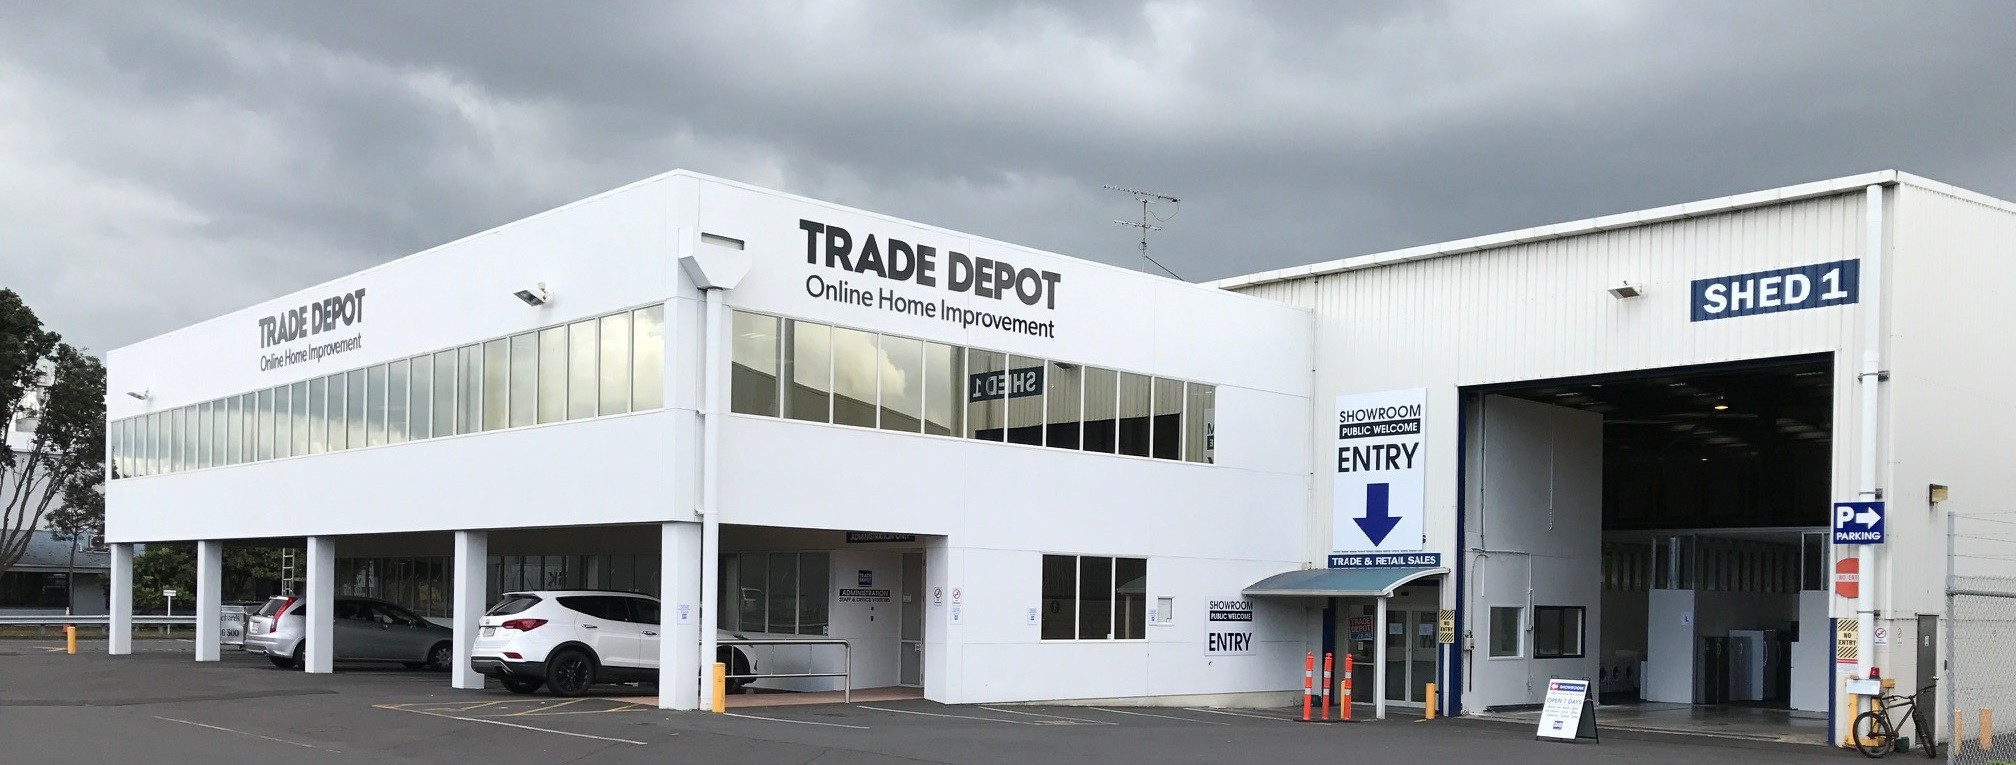 trade depot | linkedin